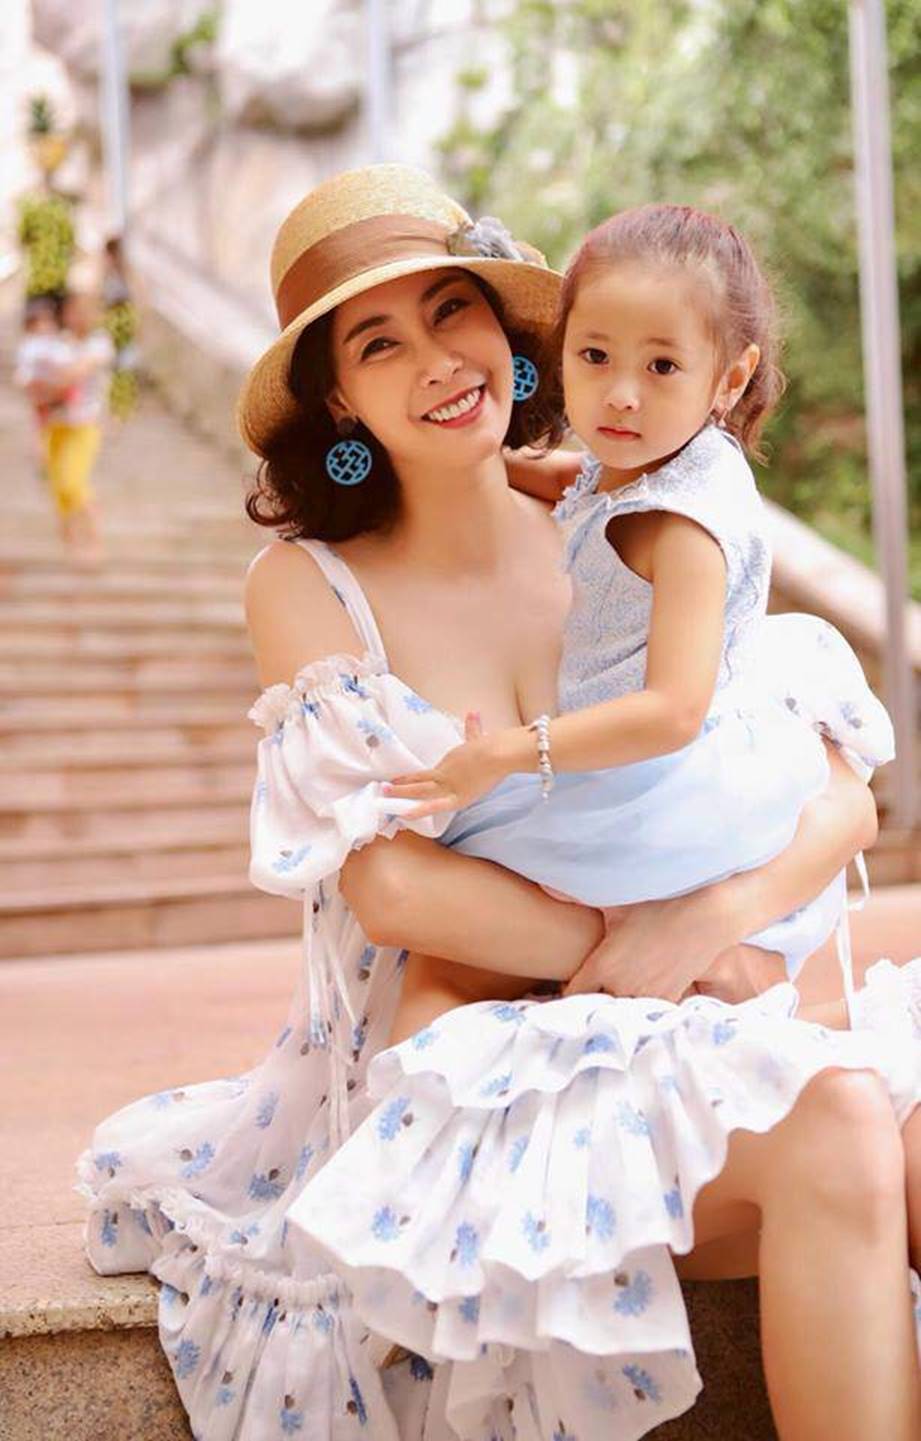 Con gái Hà Kiều Anh được khen xinh và cao đúng chuẩn Hoa hậu tương lai-14